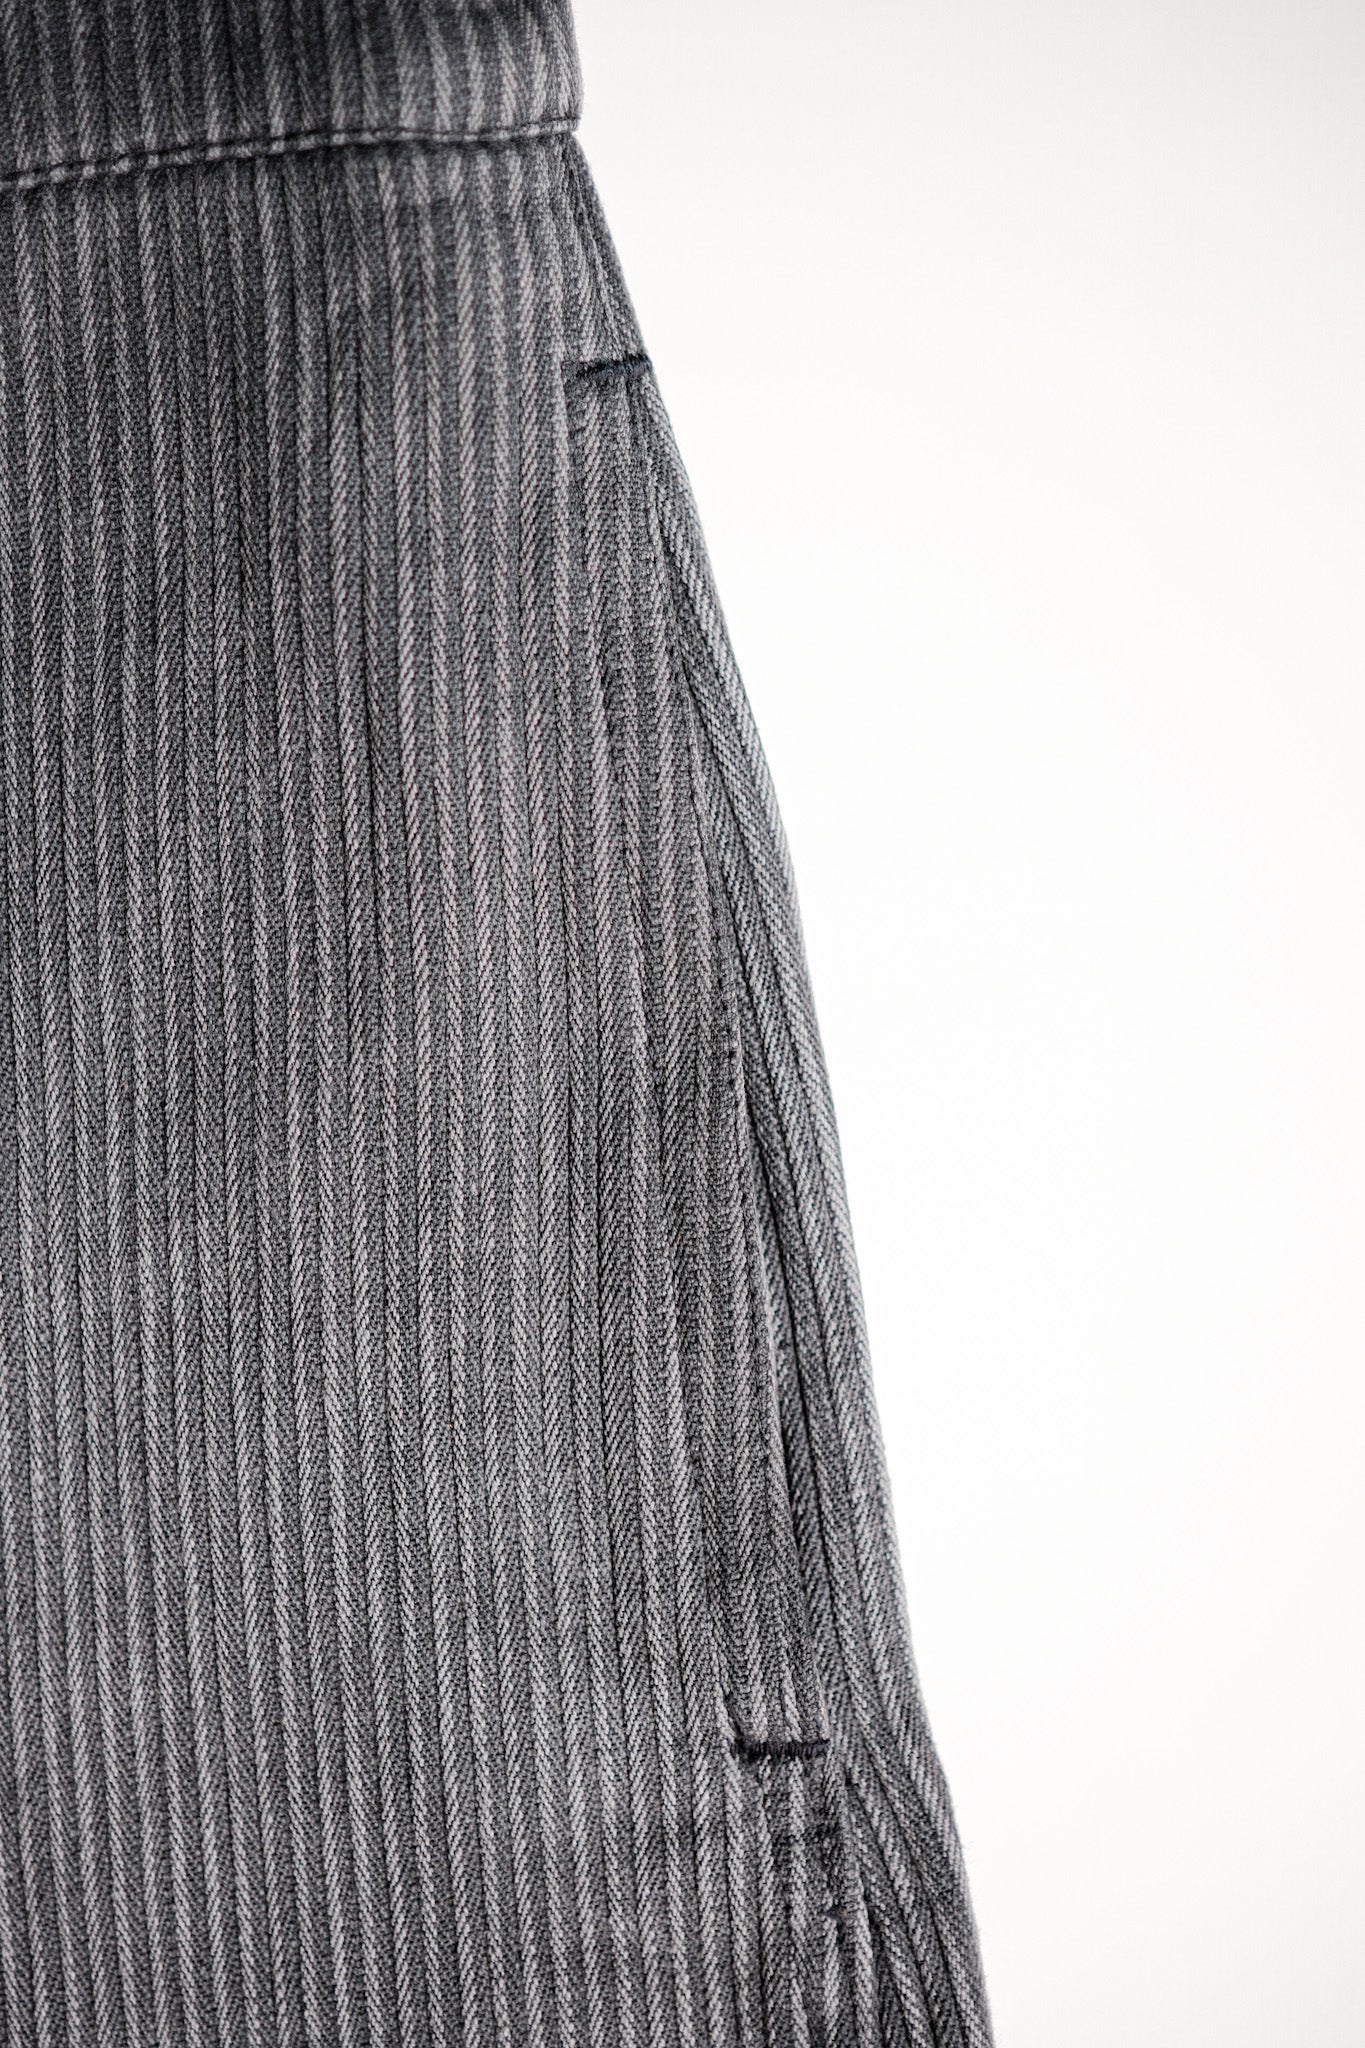 [〜50年代]法國文頓Pique工作褲